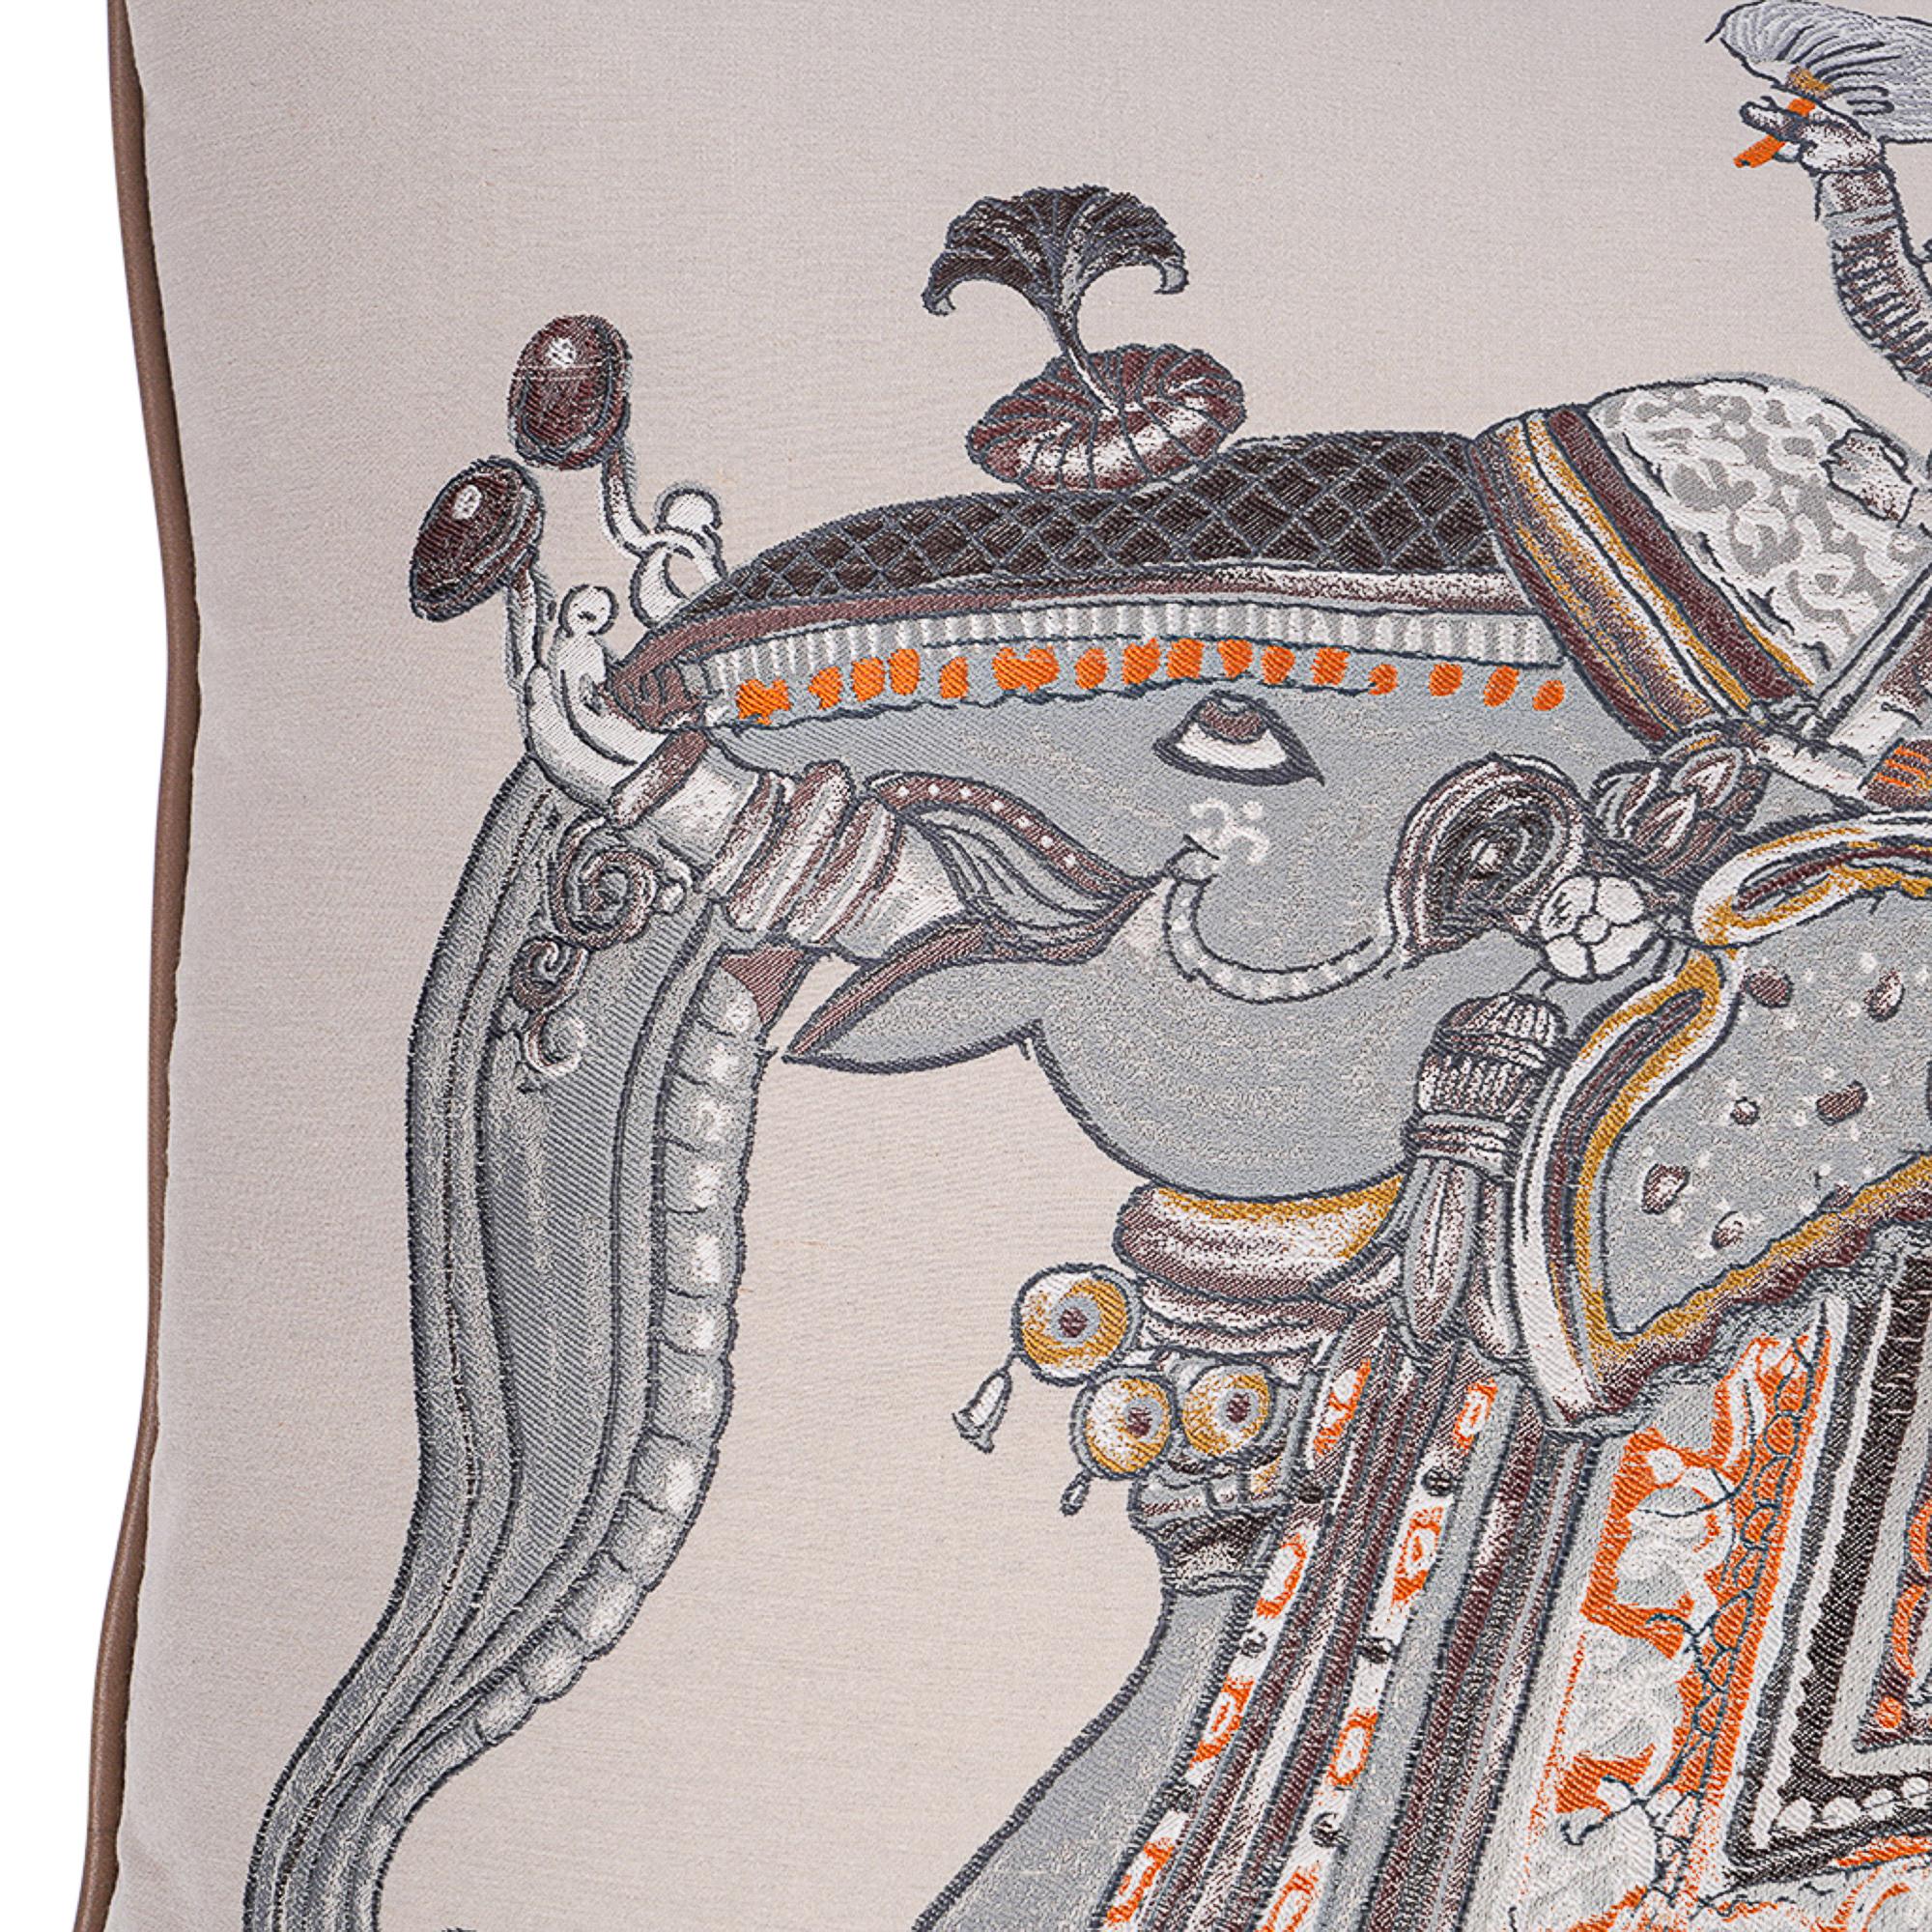 Mightychic propose un oreiller Hermes Beloved India GM extrêmement rare.
Conçu par Philippe Dumas en 2009.
La housse amovible est en soie, coton et viscose.
Les couleurs sont le brun, le gris et l'orange
Le design est un hommage à l'art populaire